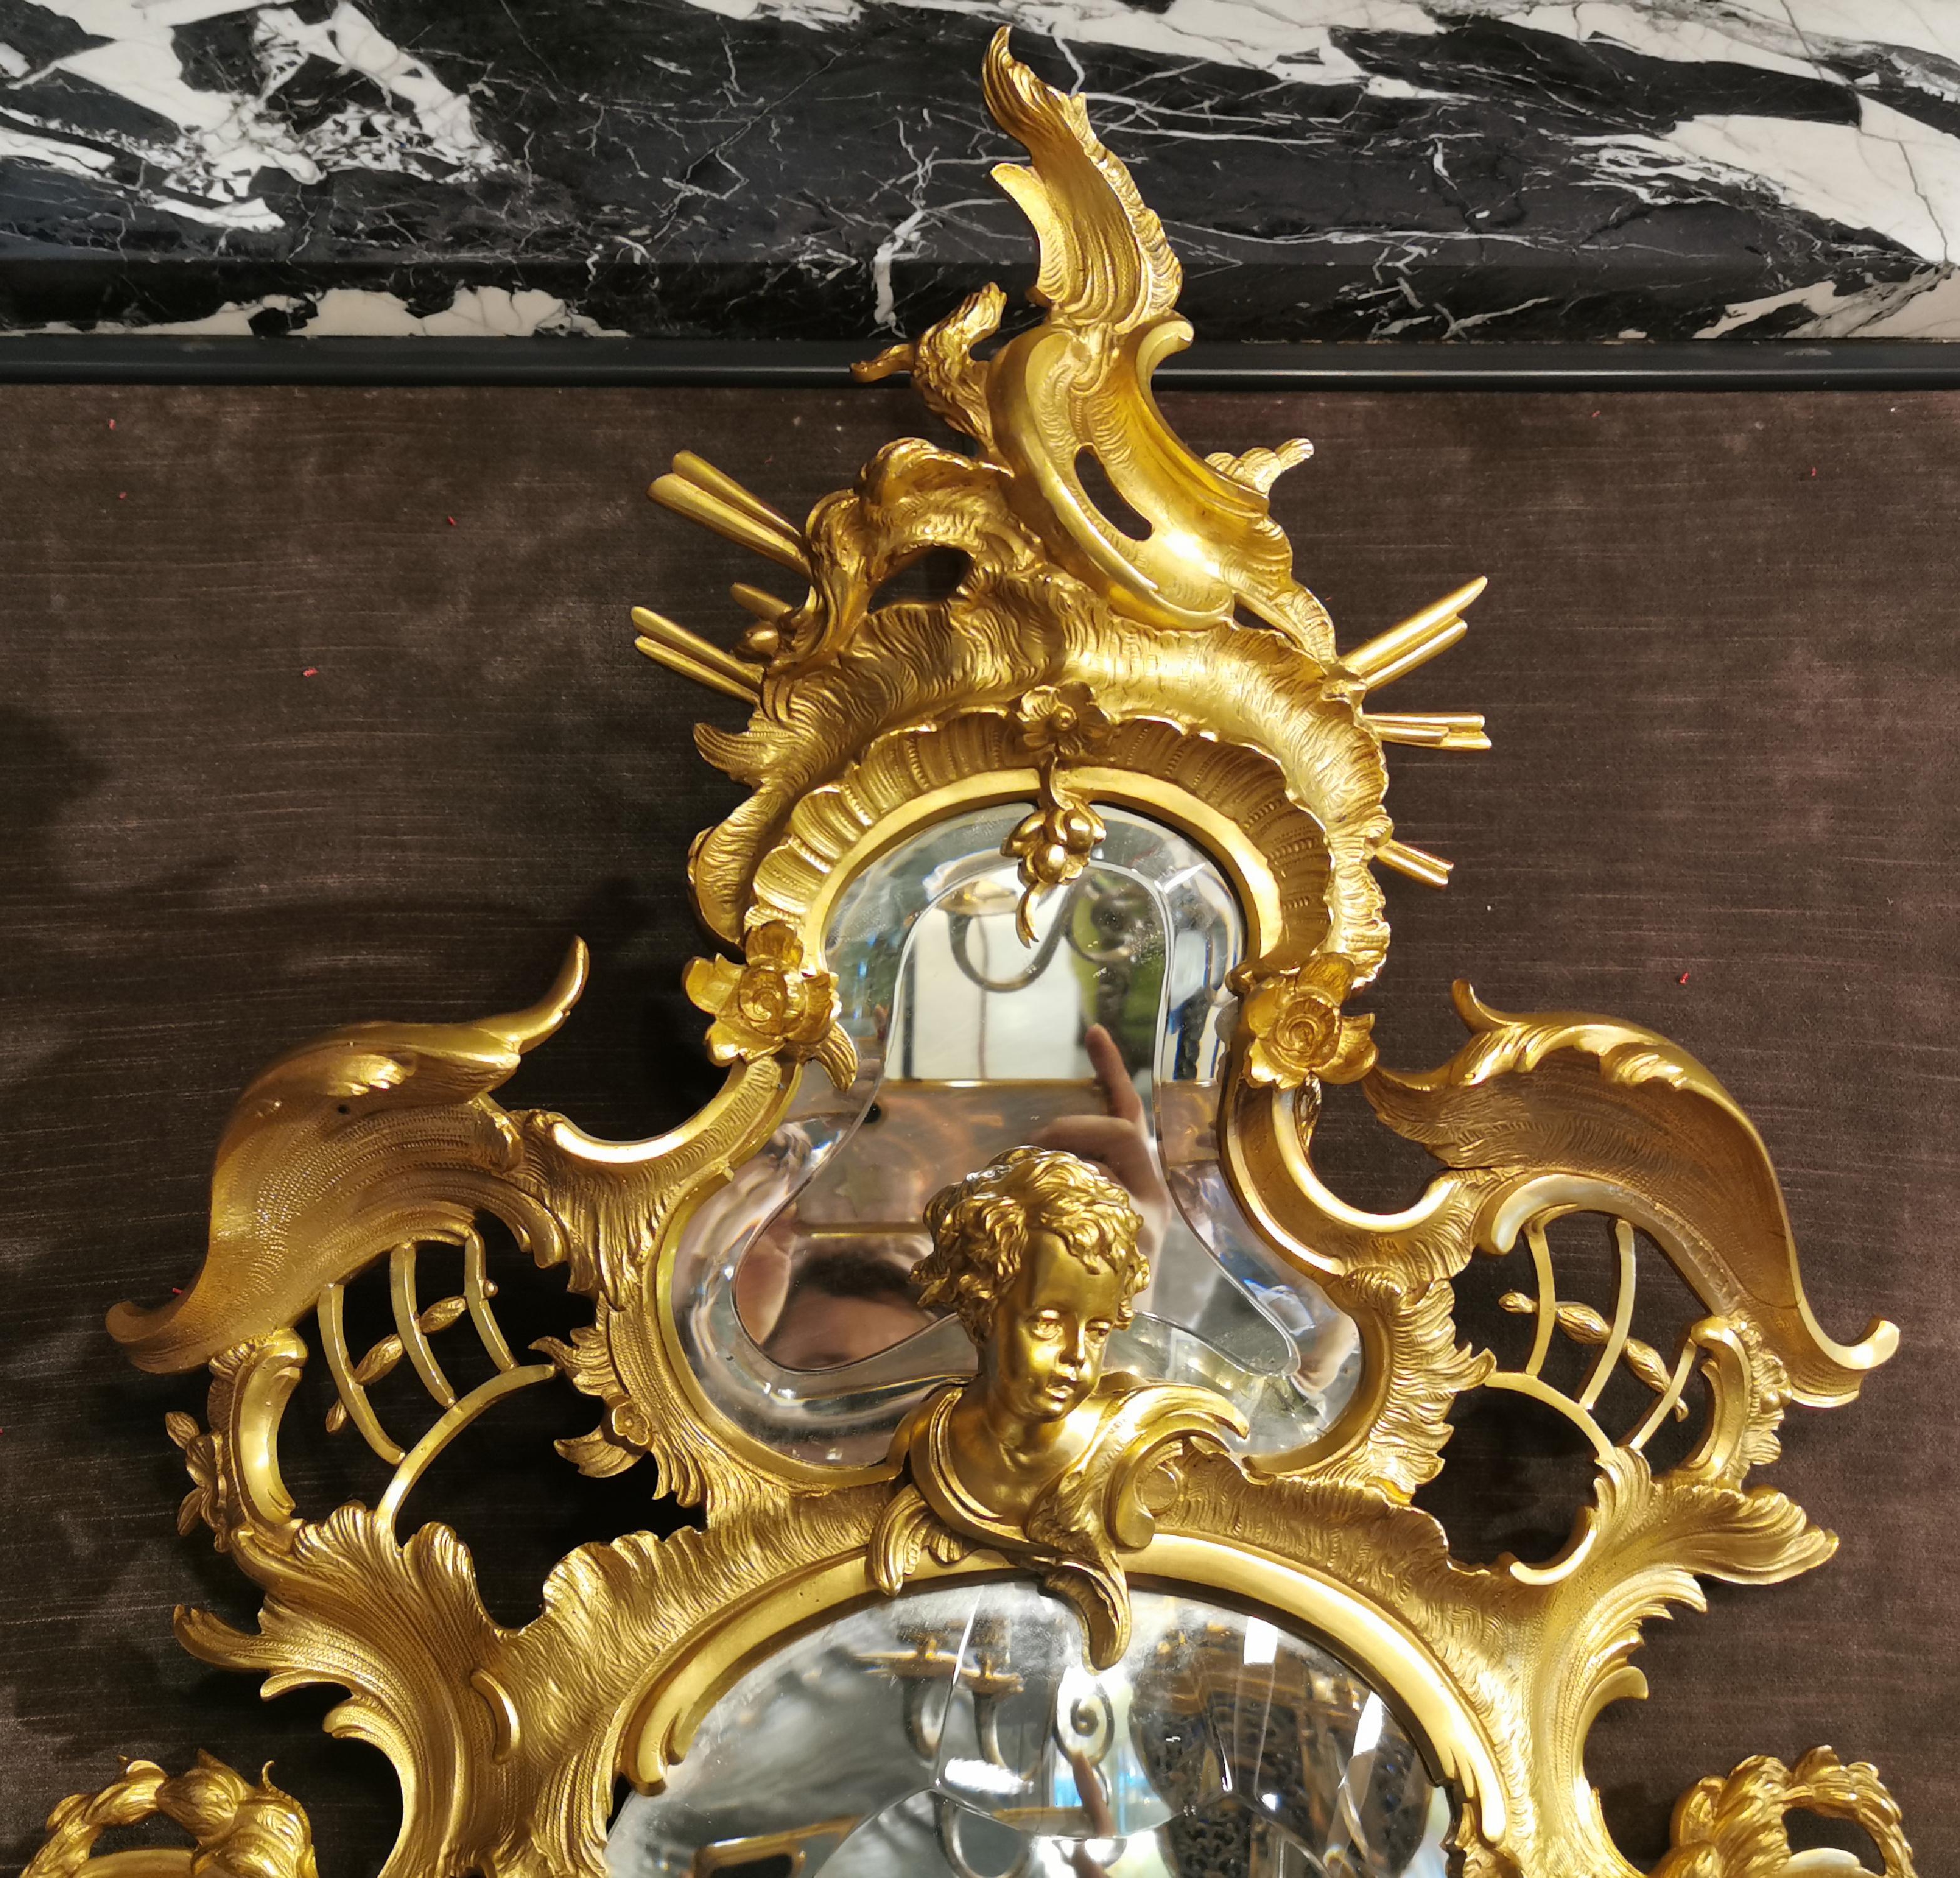 Ce très riche miroir de style Napoléon III a été réalisé en bronze doré dans la seconde moitié du XIXe siècle.
Le cadre courbe et contre-courbe à décor très rococo encadre deux miroirs à verre biseauté. Dans ce décor composé principalement de